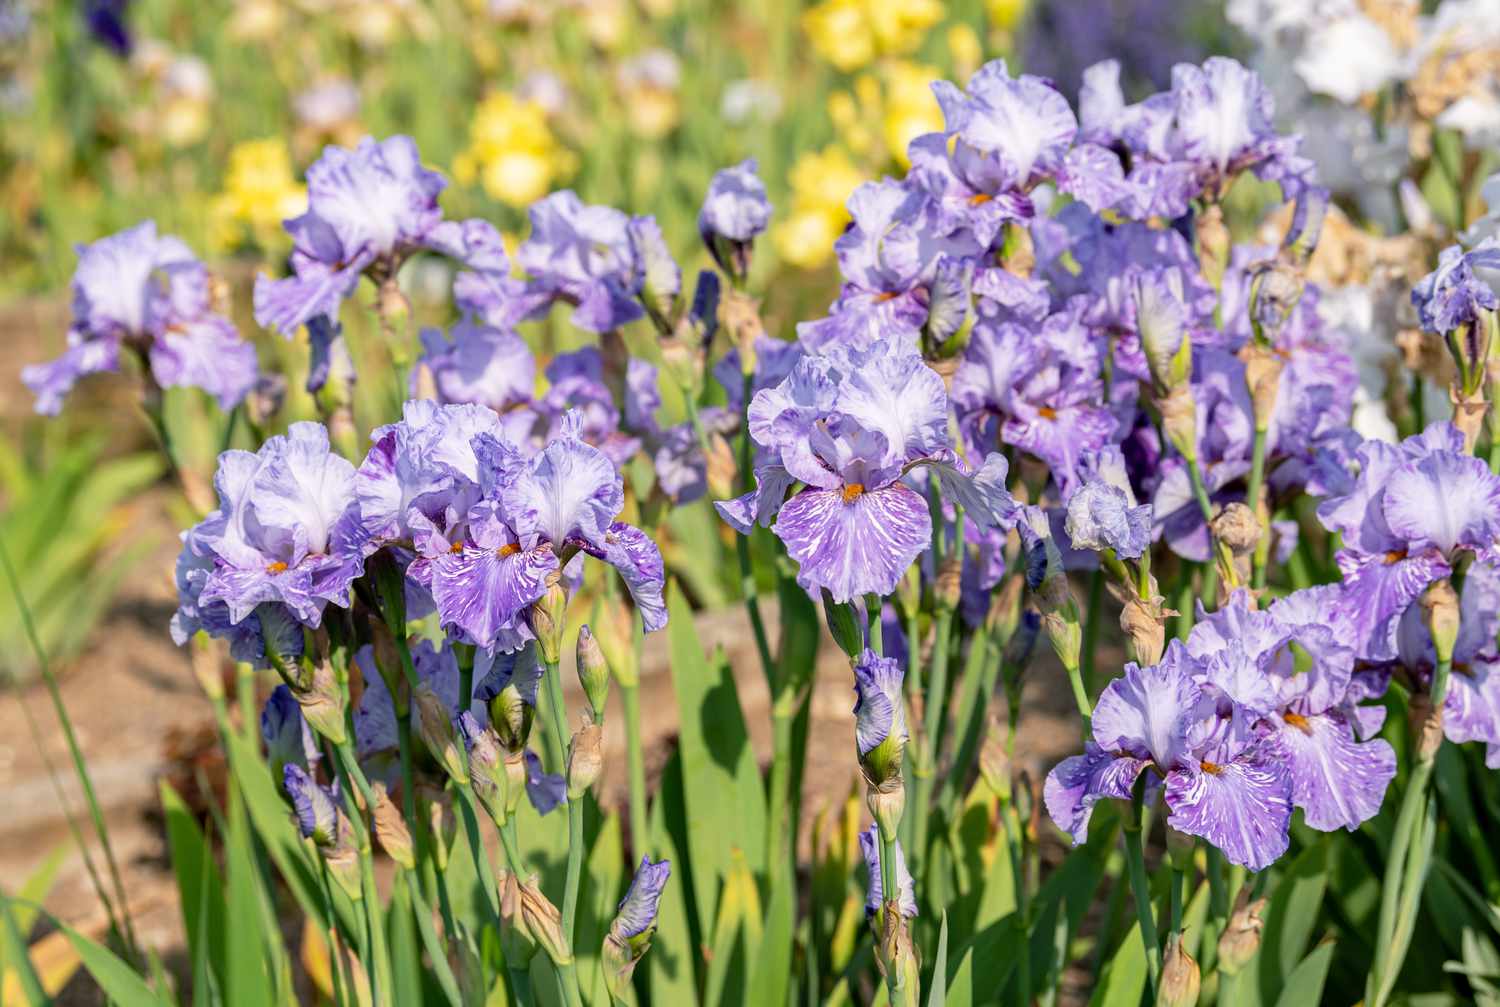 Flores de iris barbudo de color morado claro y blanco en tallos finos